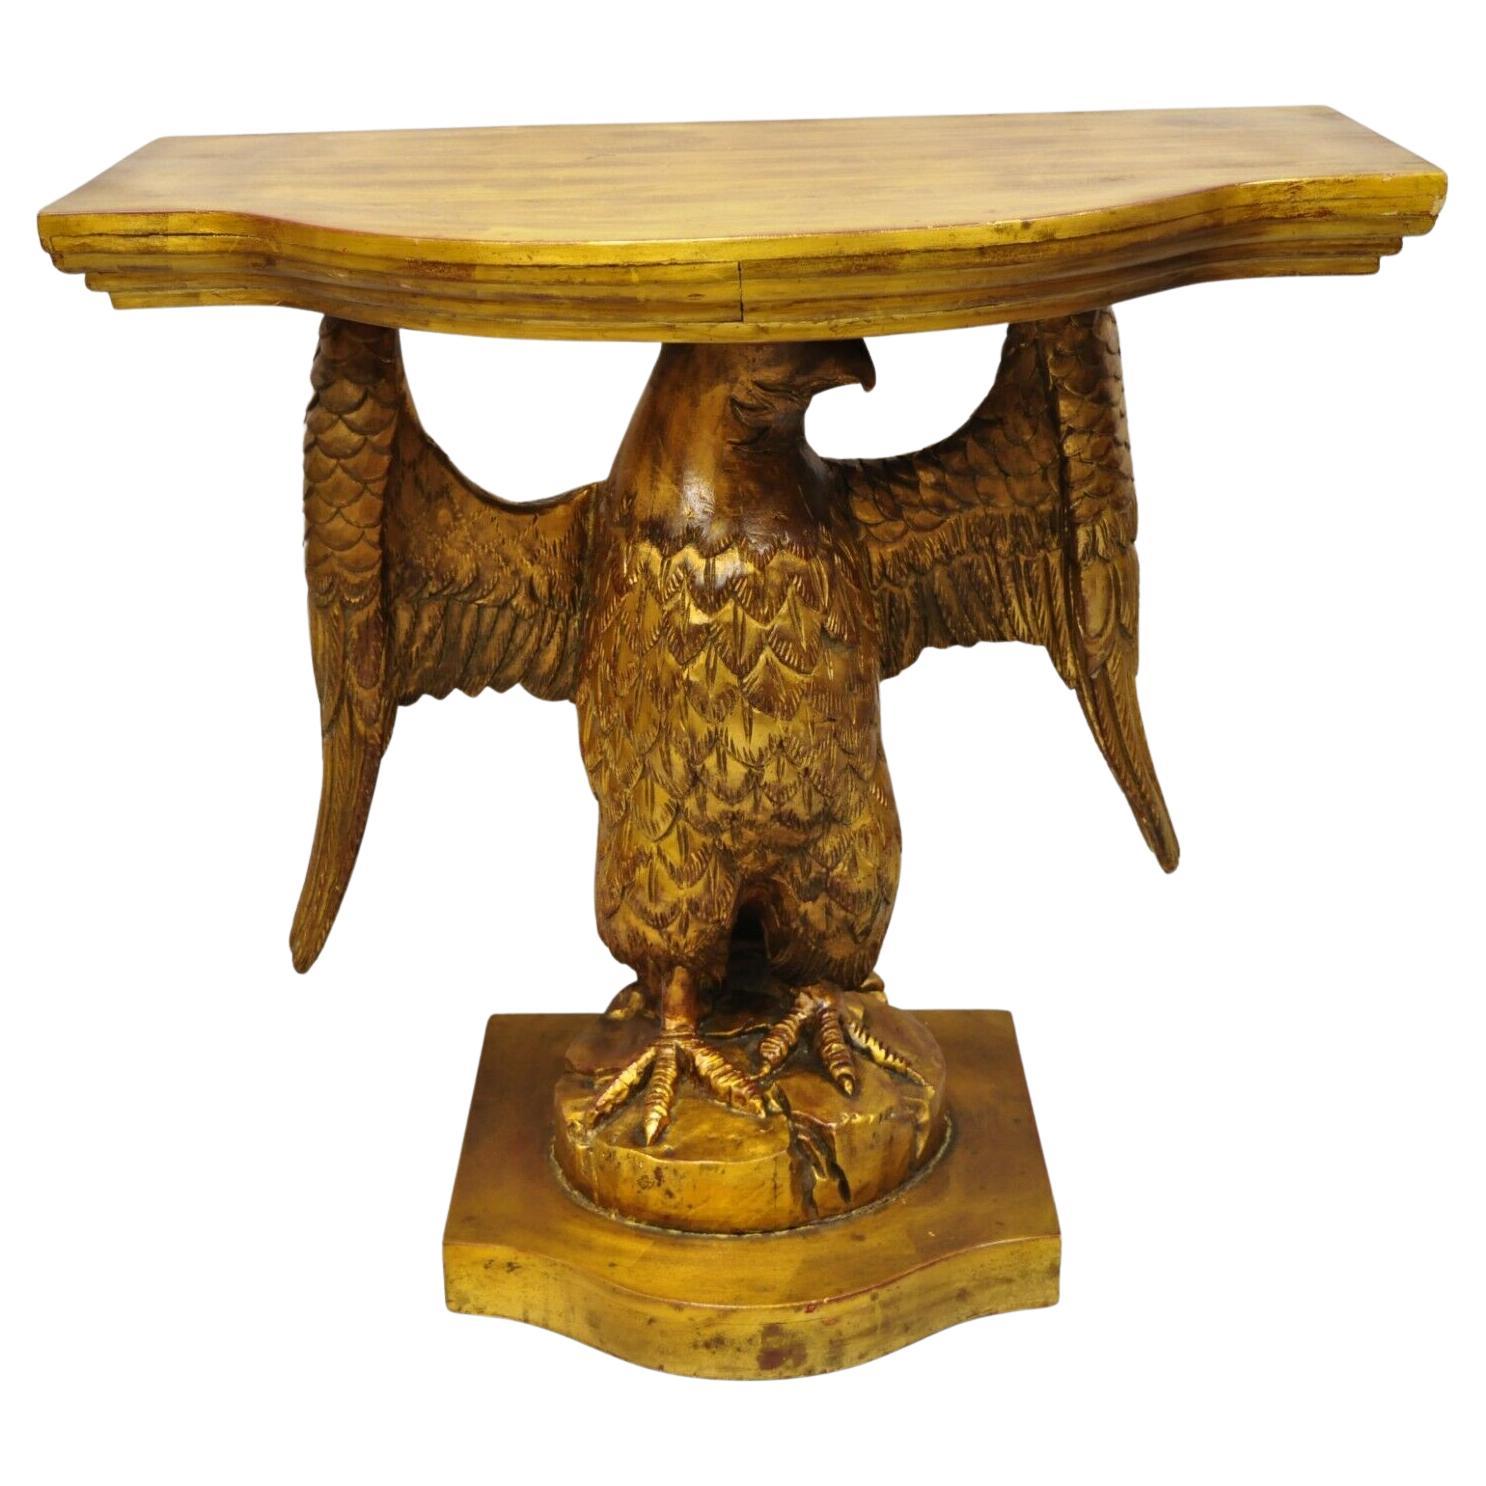 Table d'entrée italienne en bois doré et doré de style néoclassique avec aigle américain